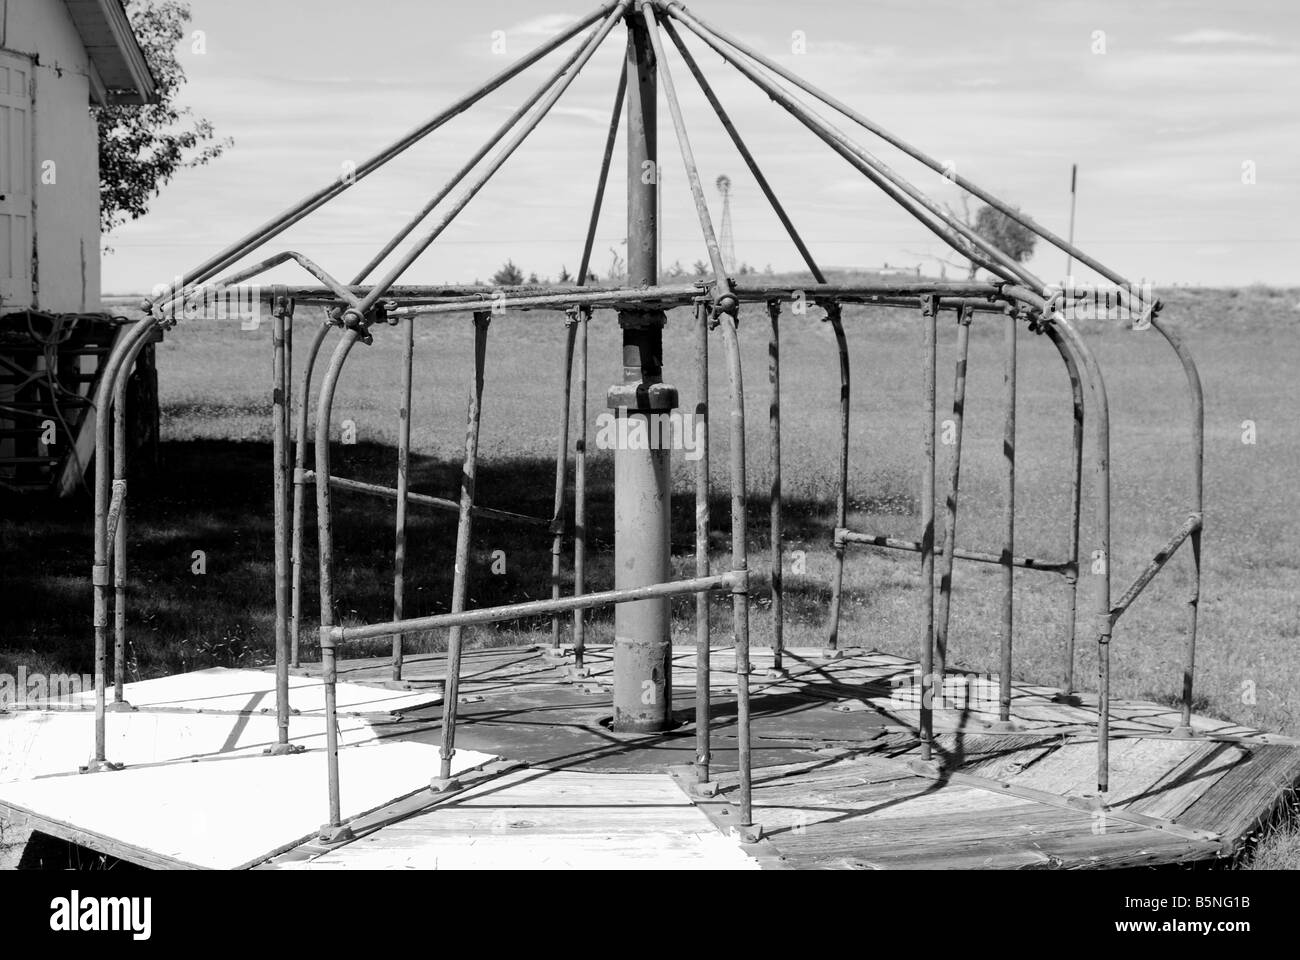 Image en noir et blanc d'un merry go round dans une ancienne aire de jeux Banque D'Images